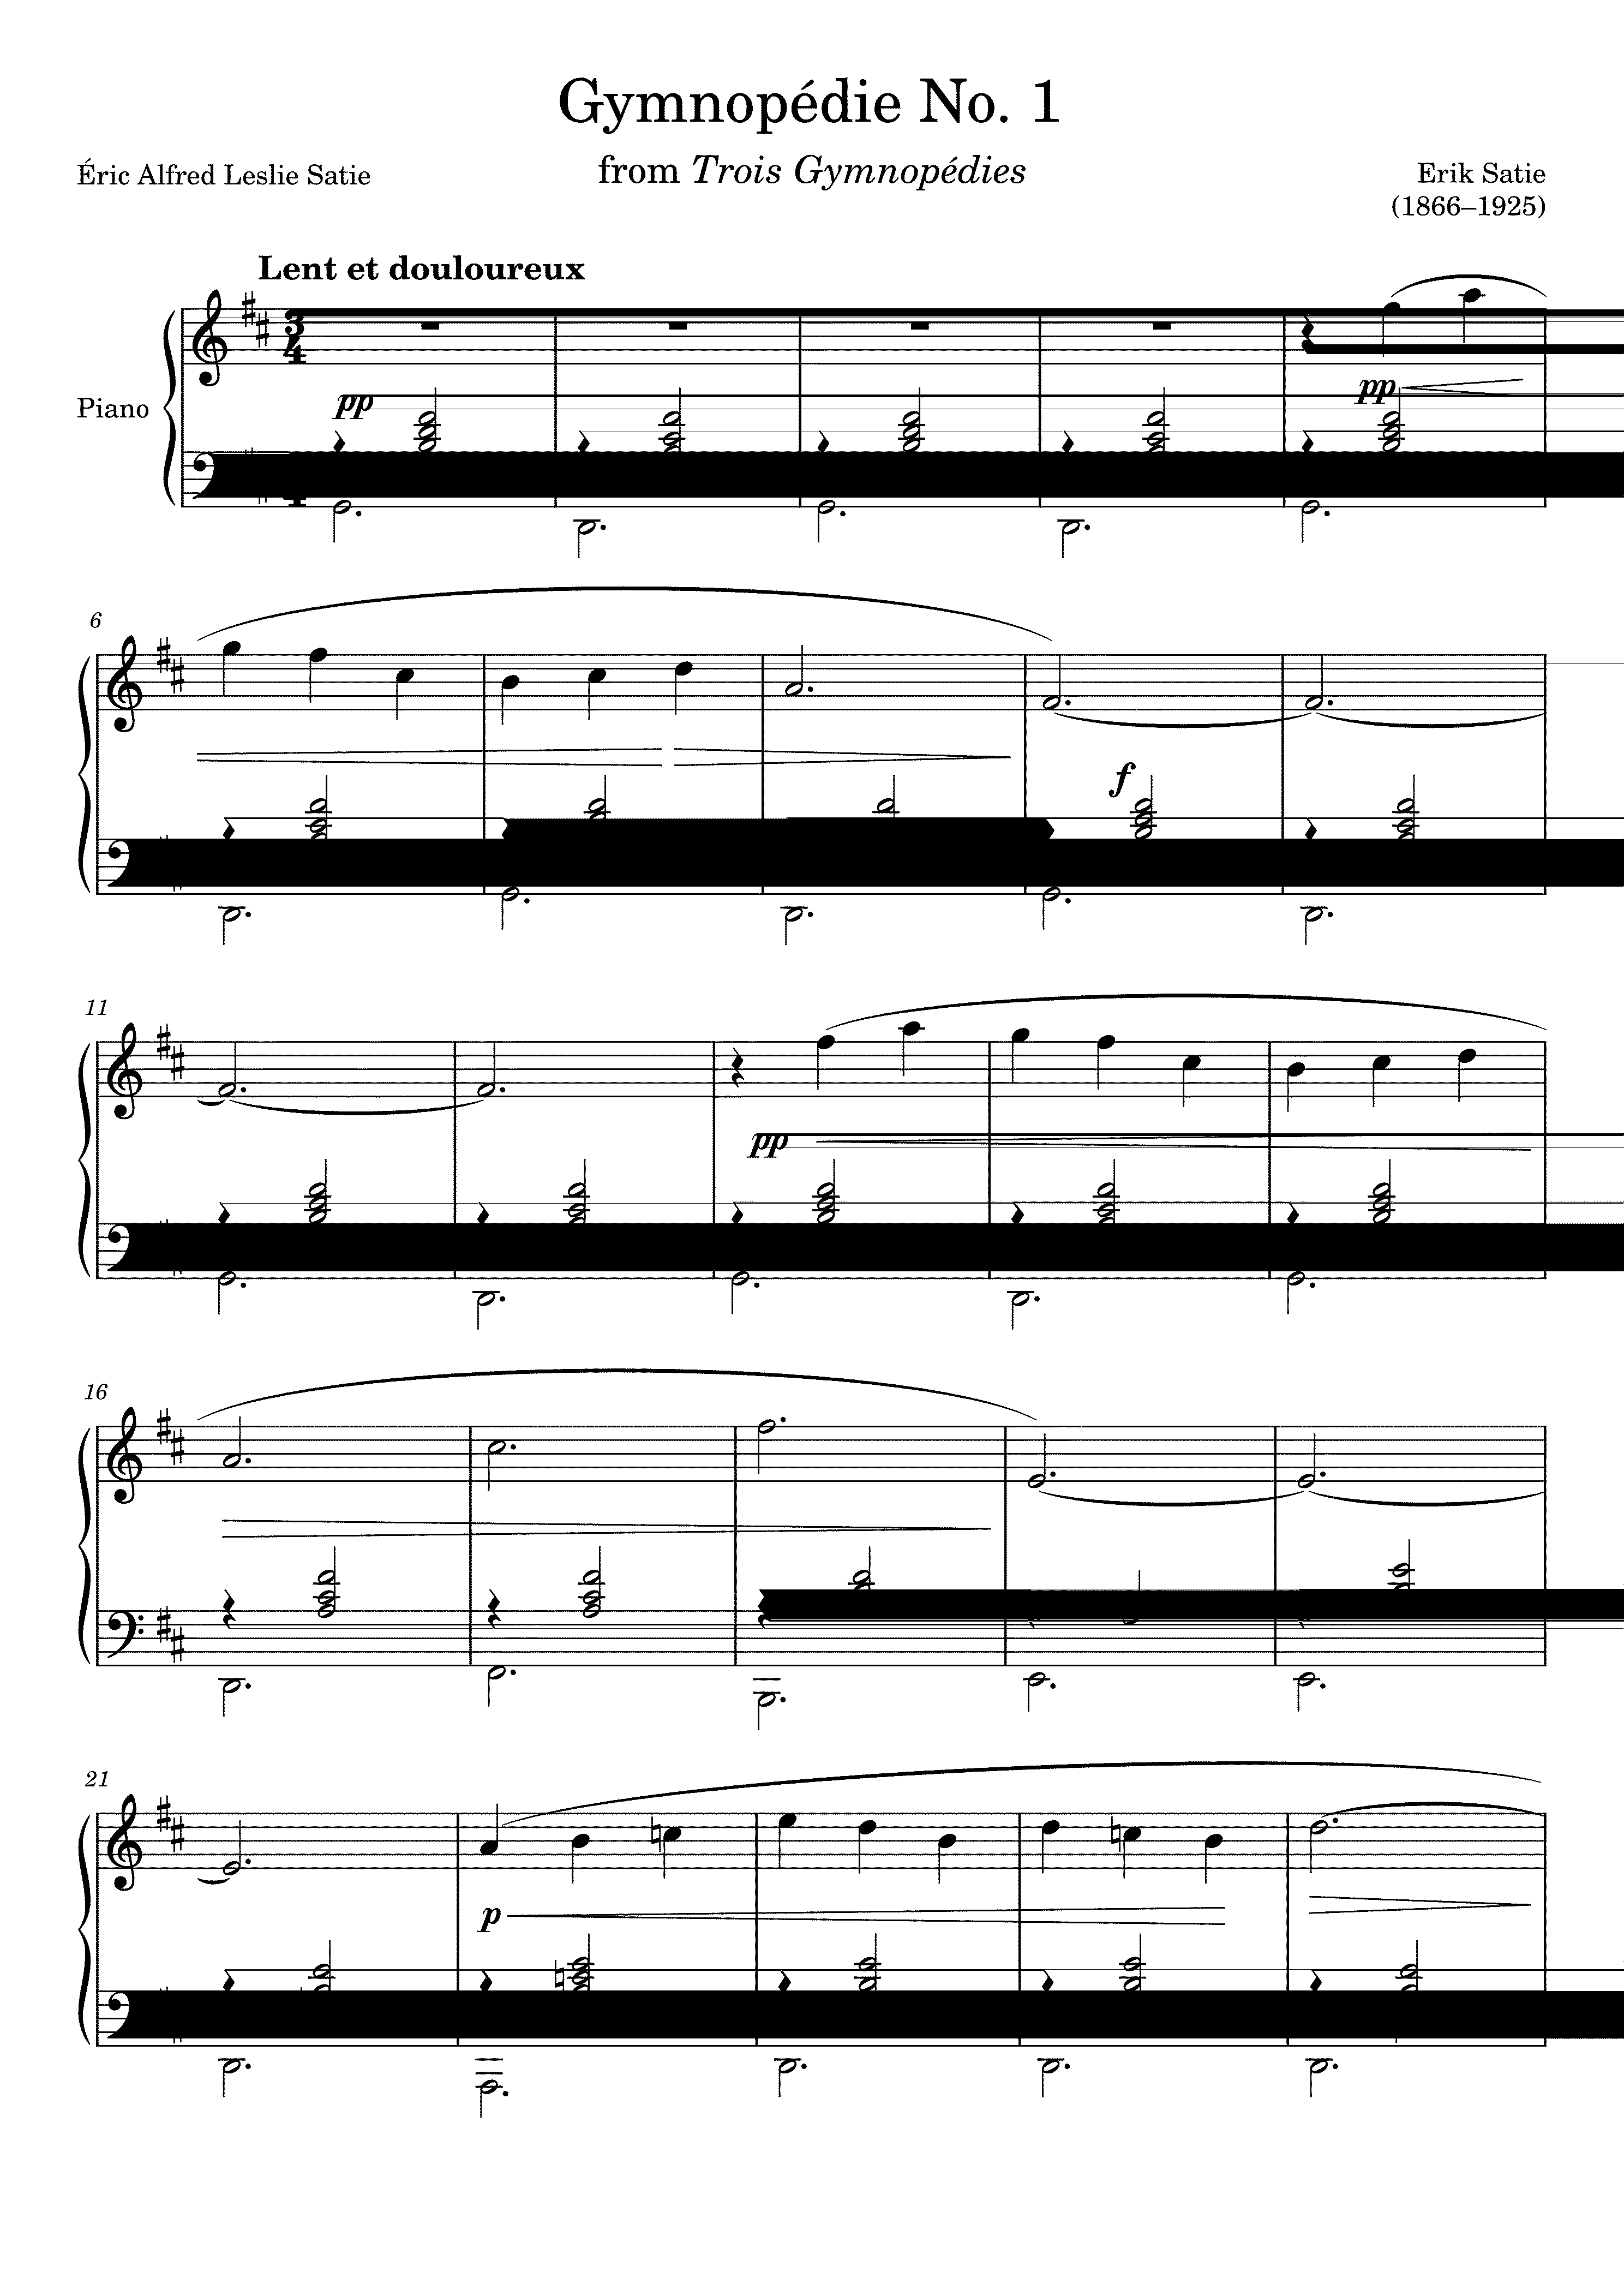 Partitura Gymnopedie No. 1 de Erik Satie